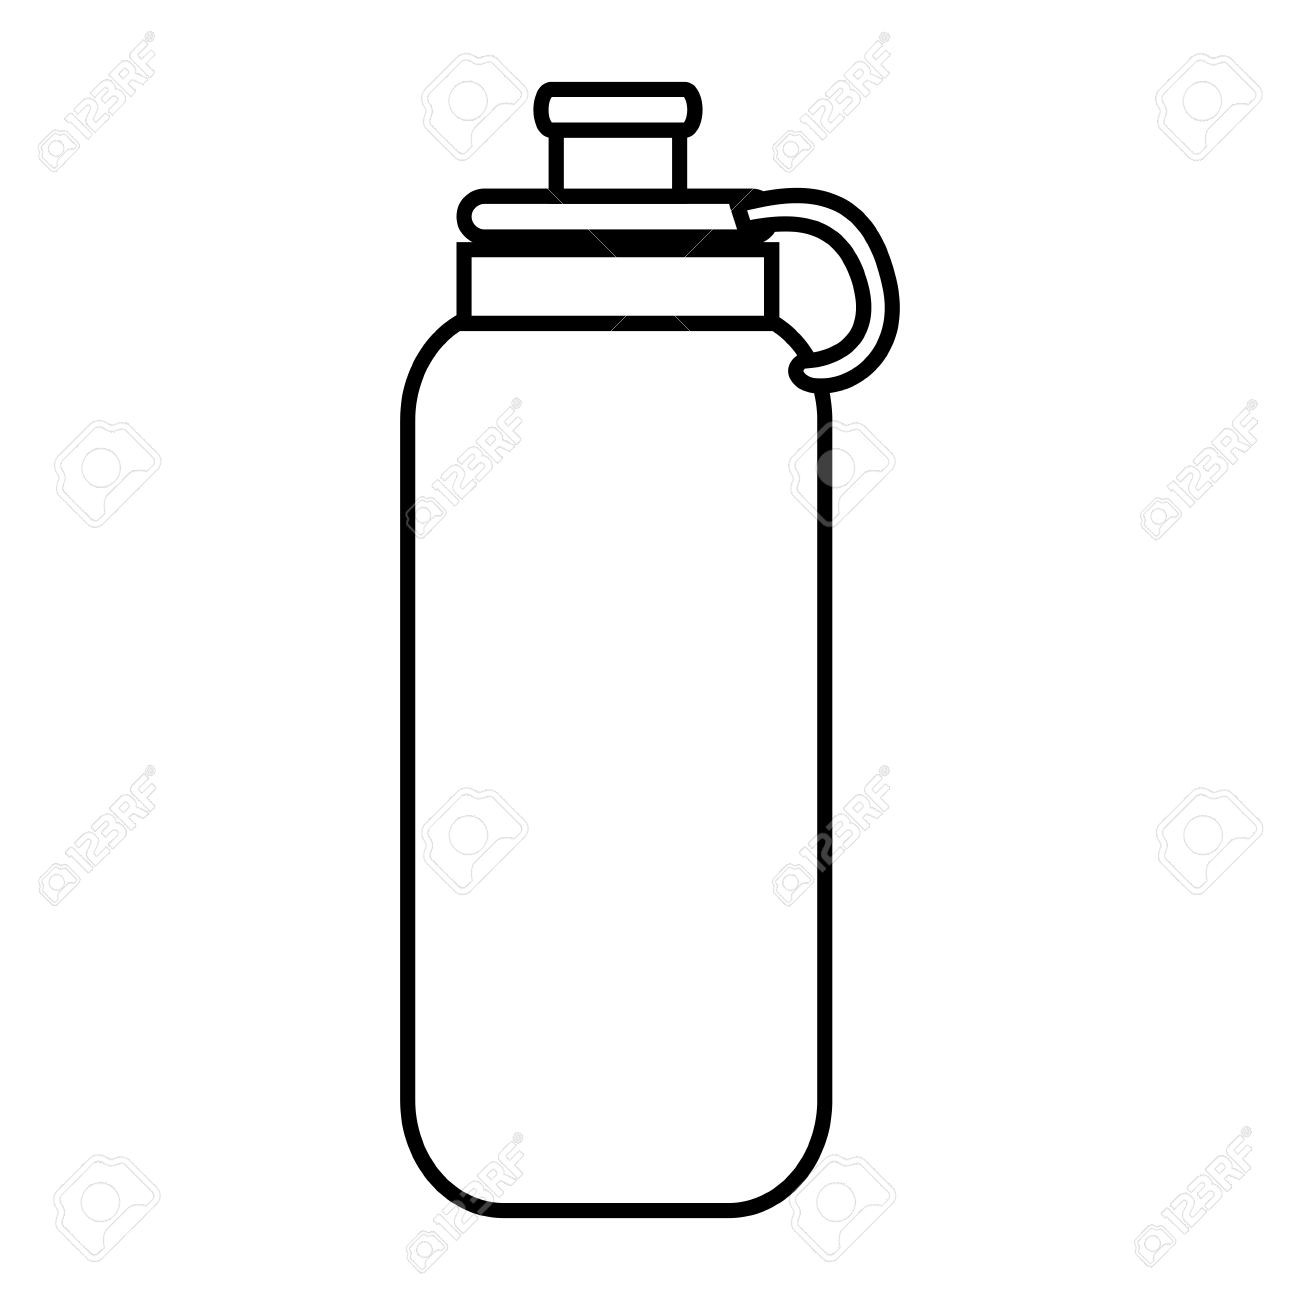 Water bottle object.